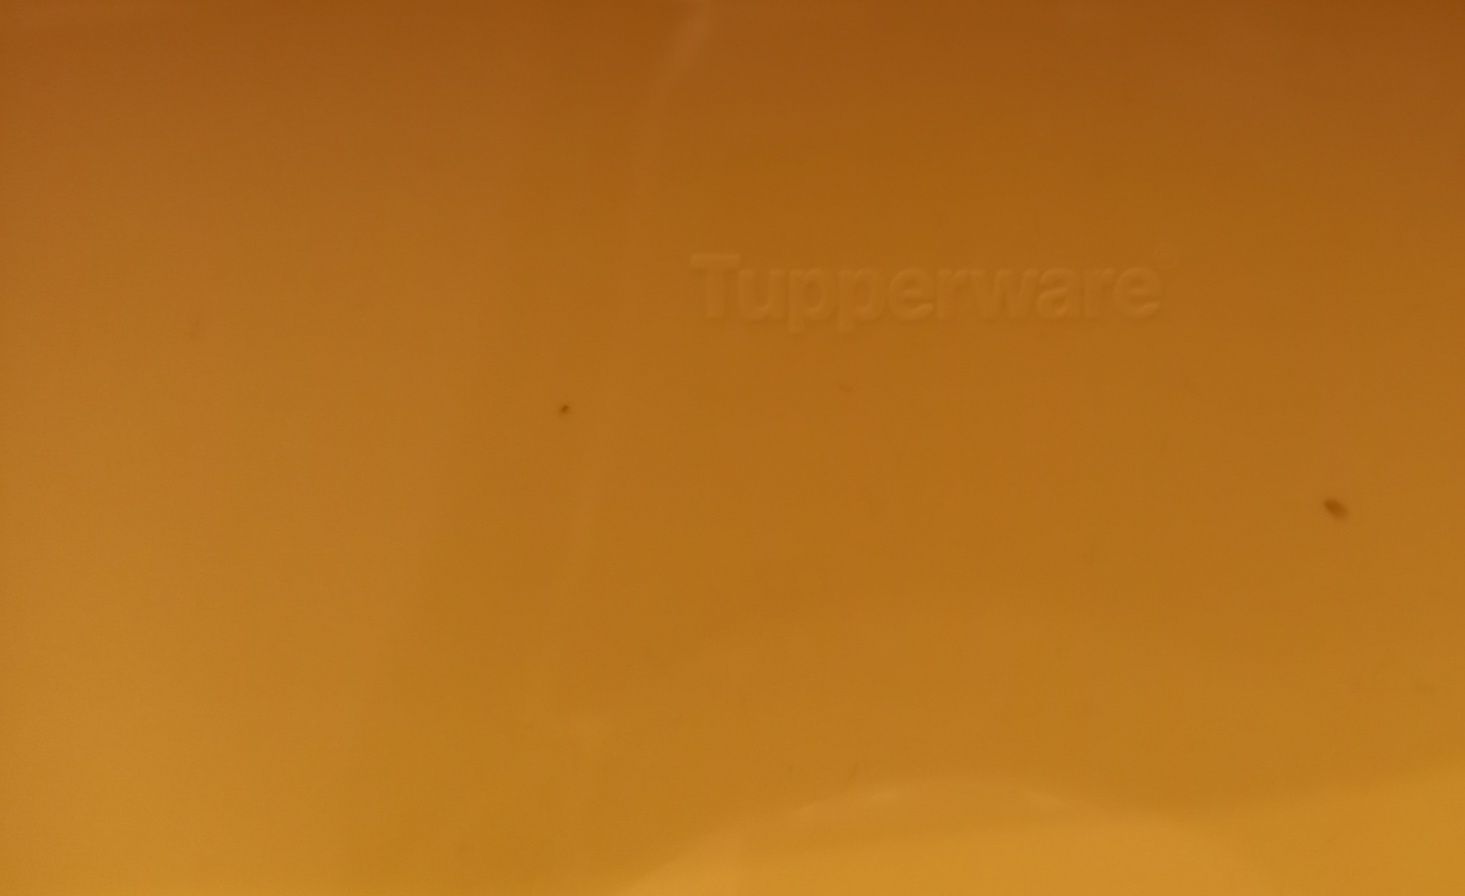 Pokrywka Tupperware do mikrofalówki